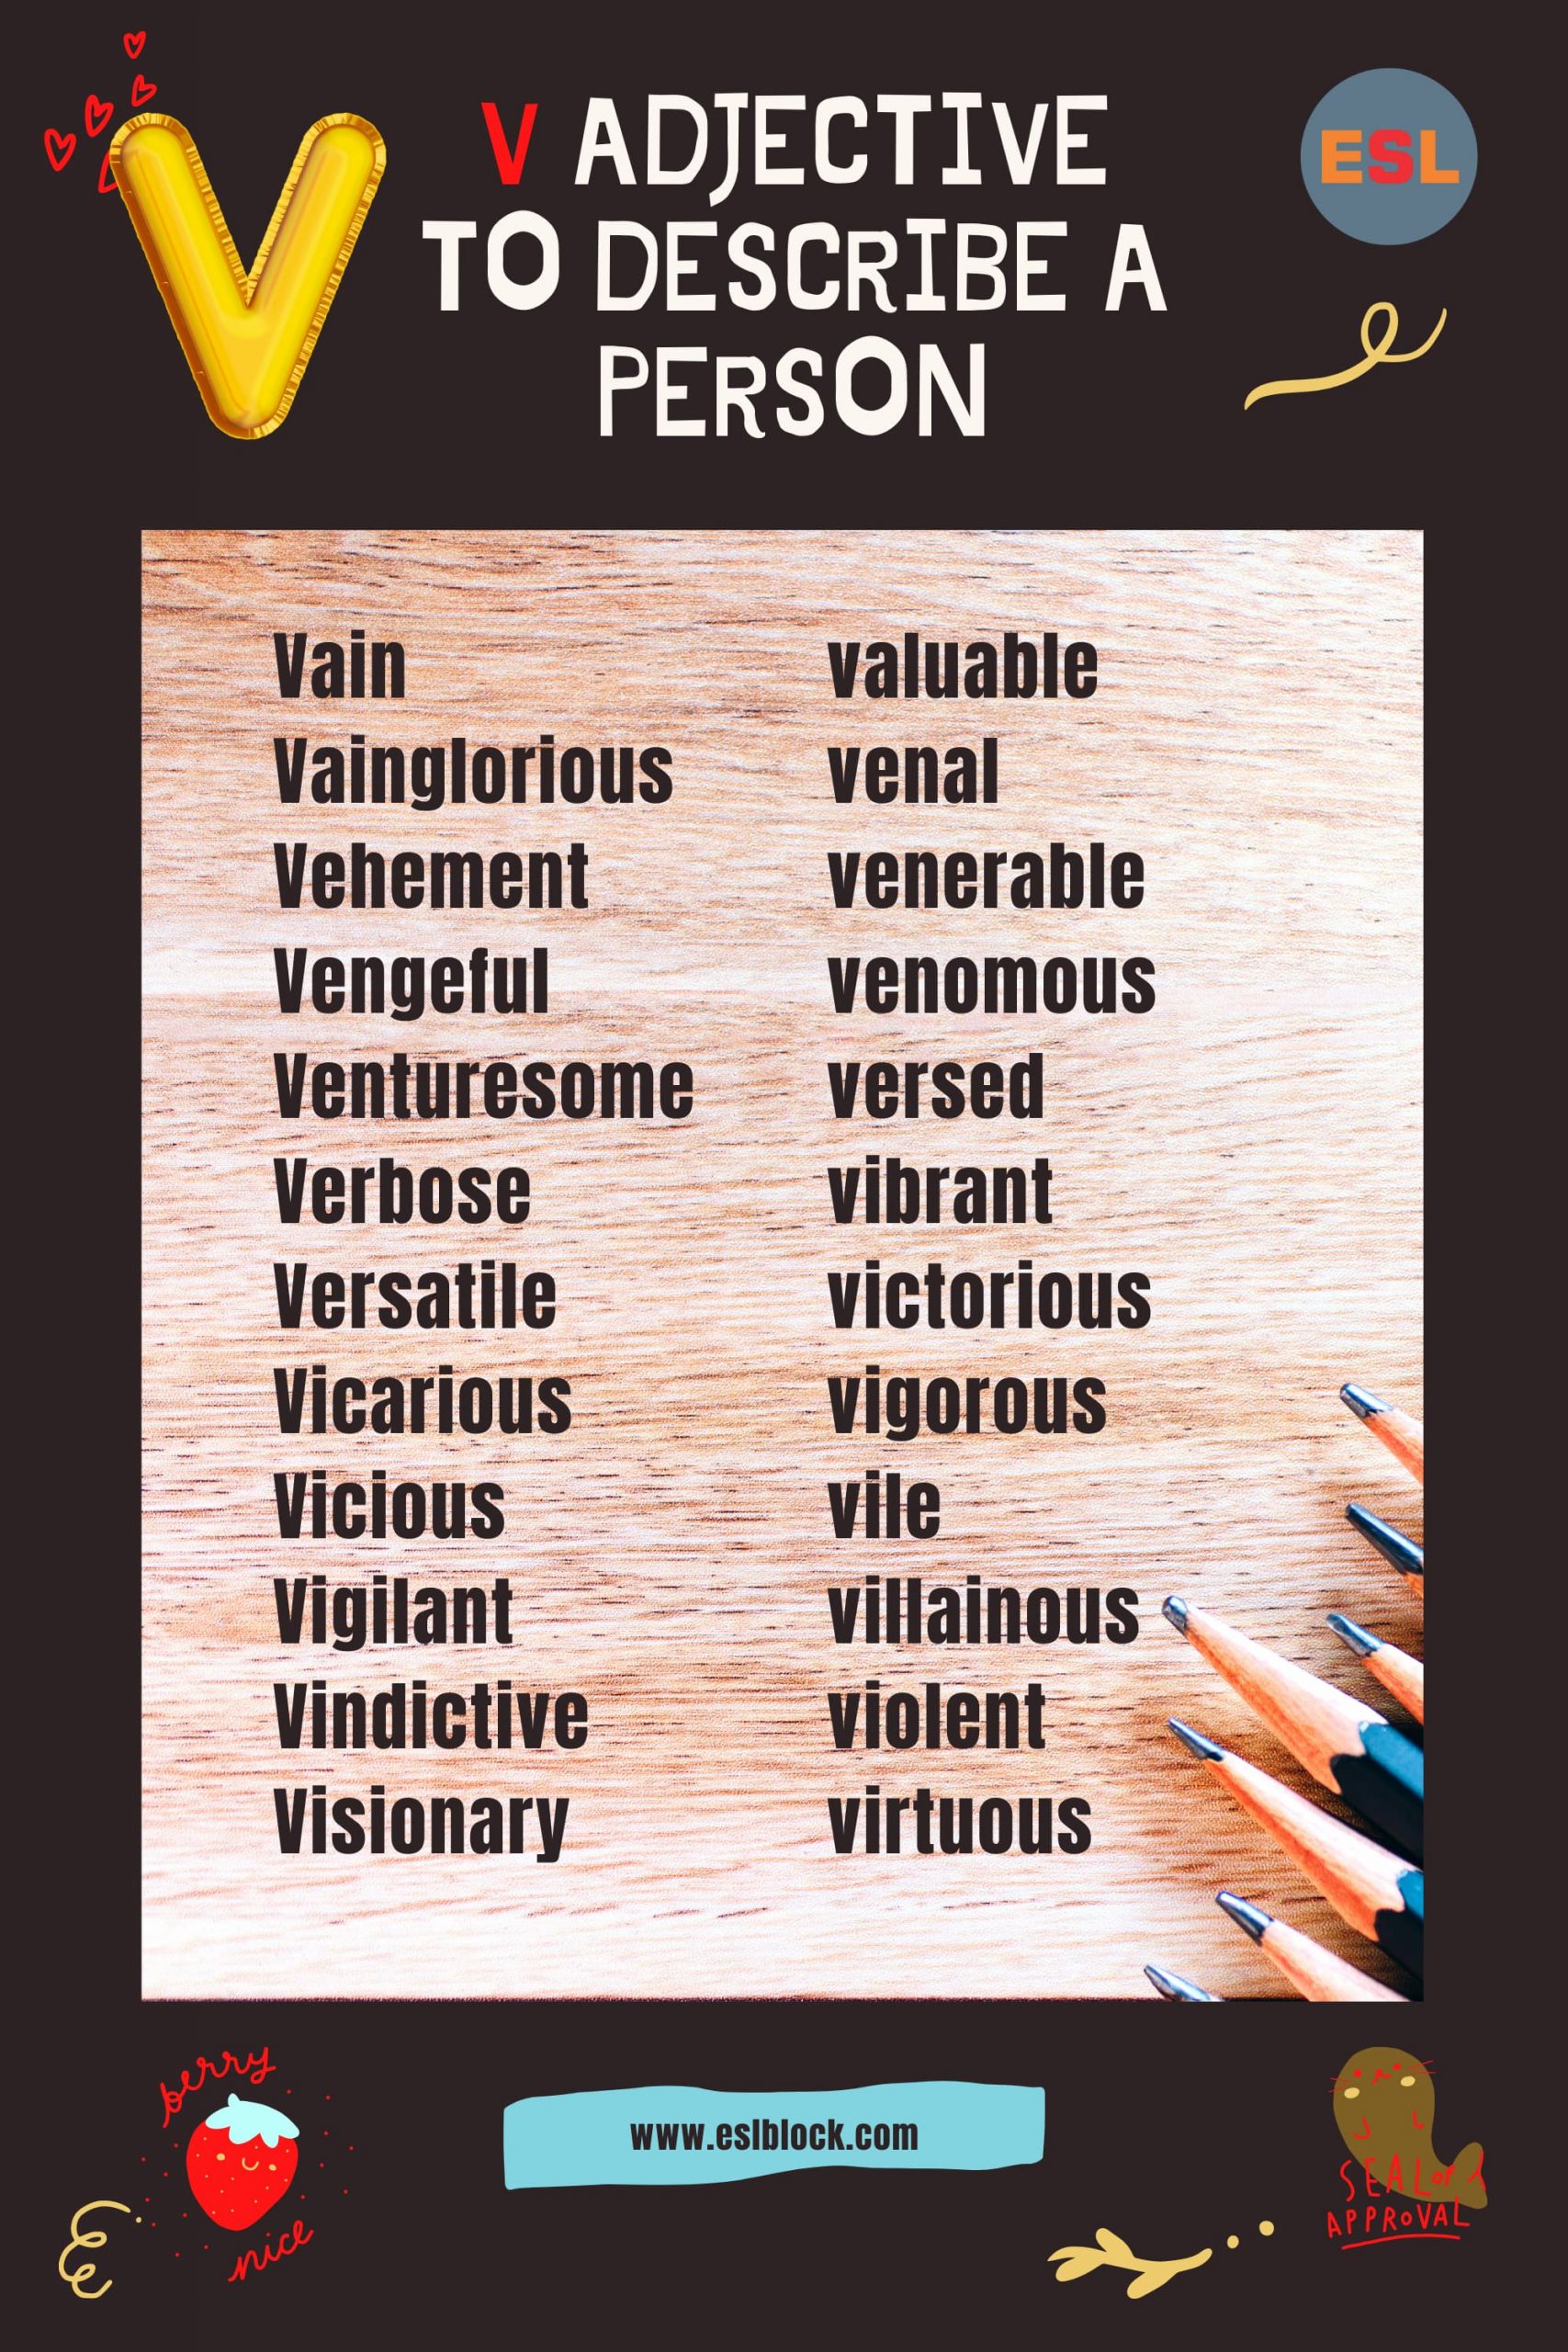 A-Z Adjectives, Adjective Words, Adjectives, Adjectives to describe a person, Positive Adjectives to Describe a Person, V Adjectives to Describe a Person, V Positive Adjectives to Describe a Person, V Words, Vocabulary, Words That Describe a Person